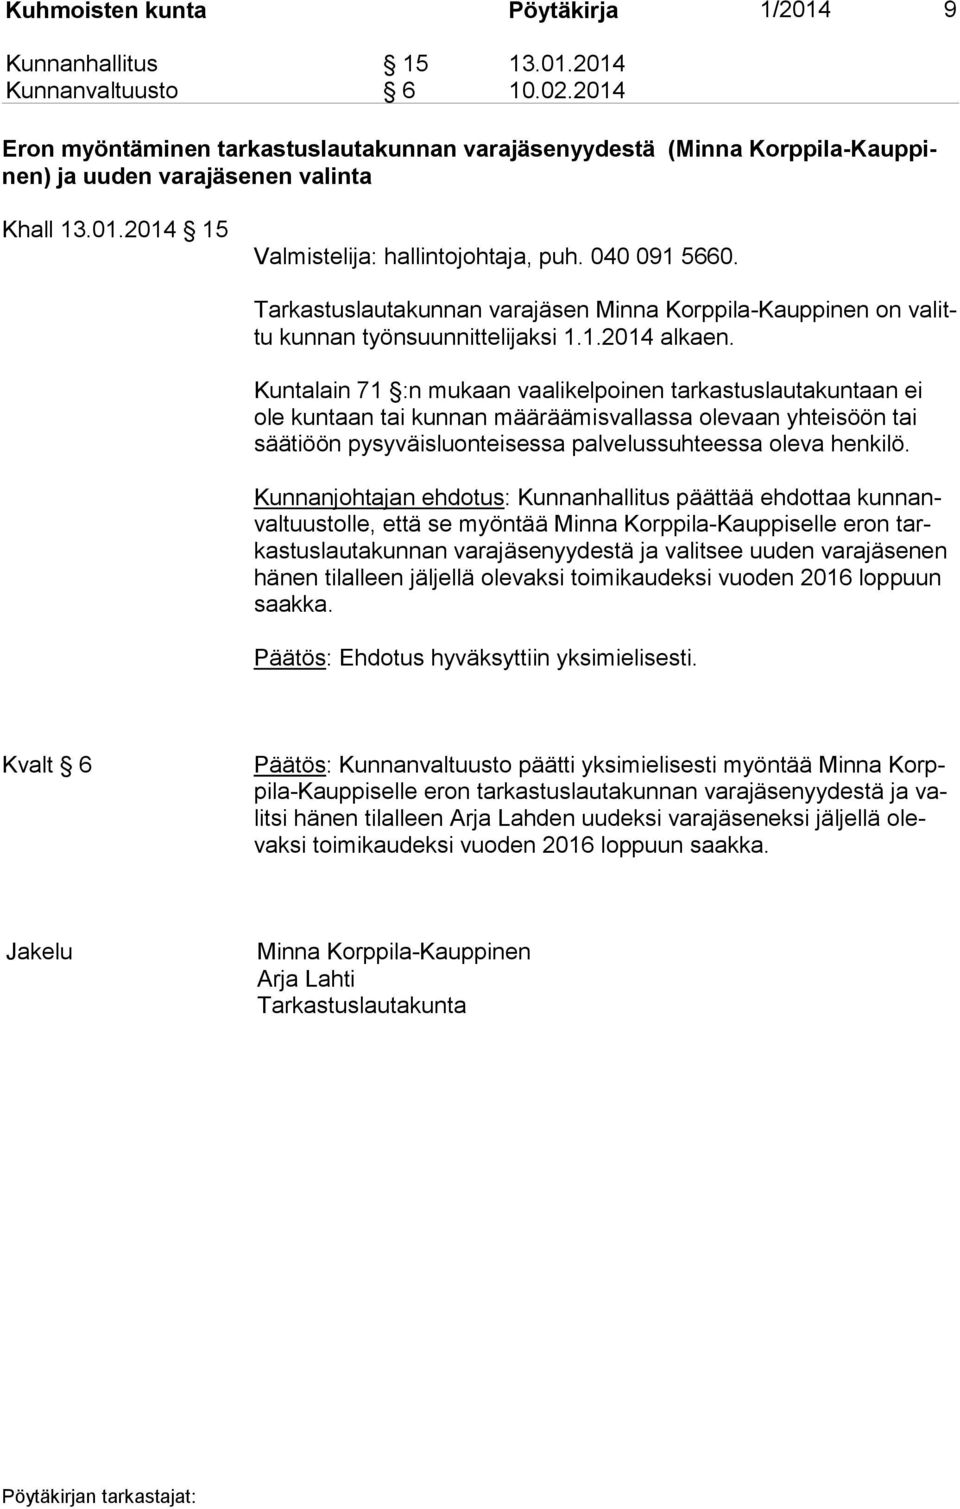 Tarkastuslautakunnan varajäsen Minna Korppila-Kauppinen on va littu kunnan työnsuunnittelijaksi 1.1.2014 alkaen.